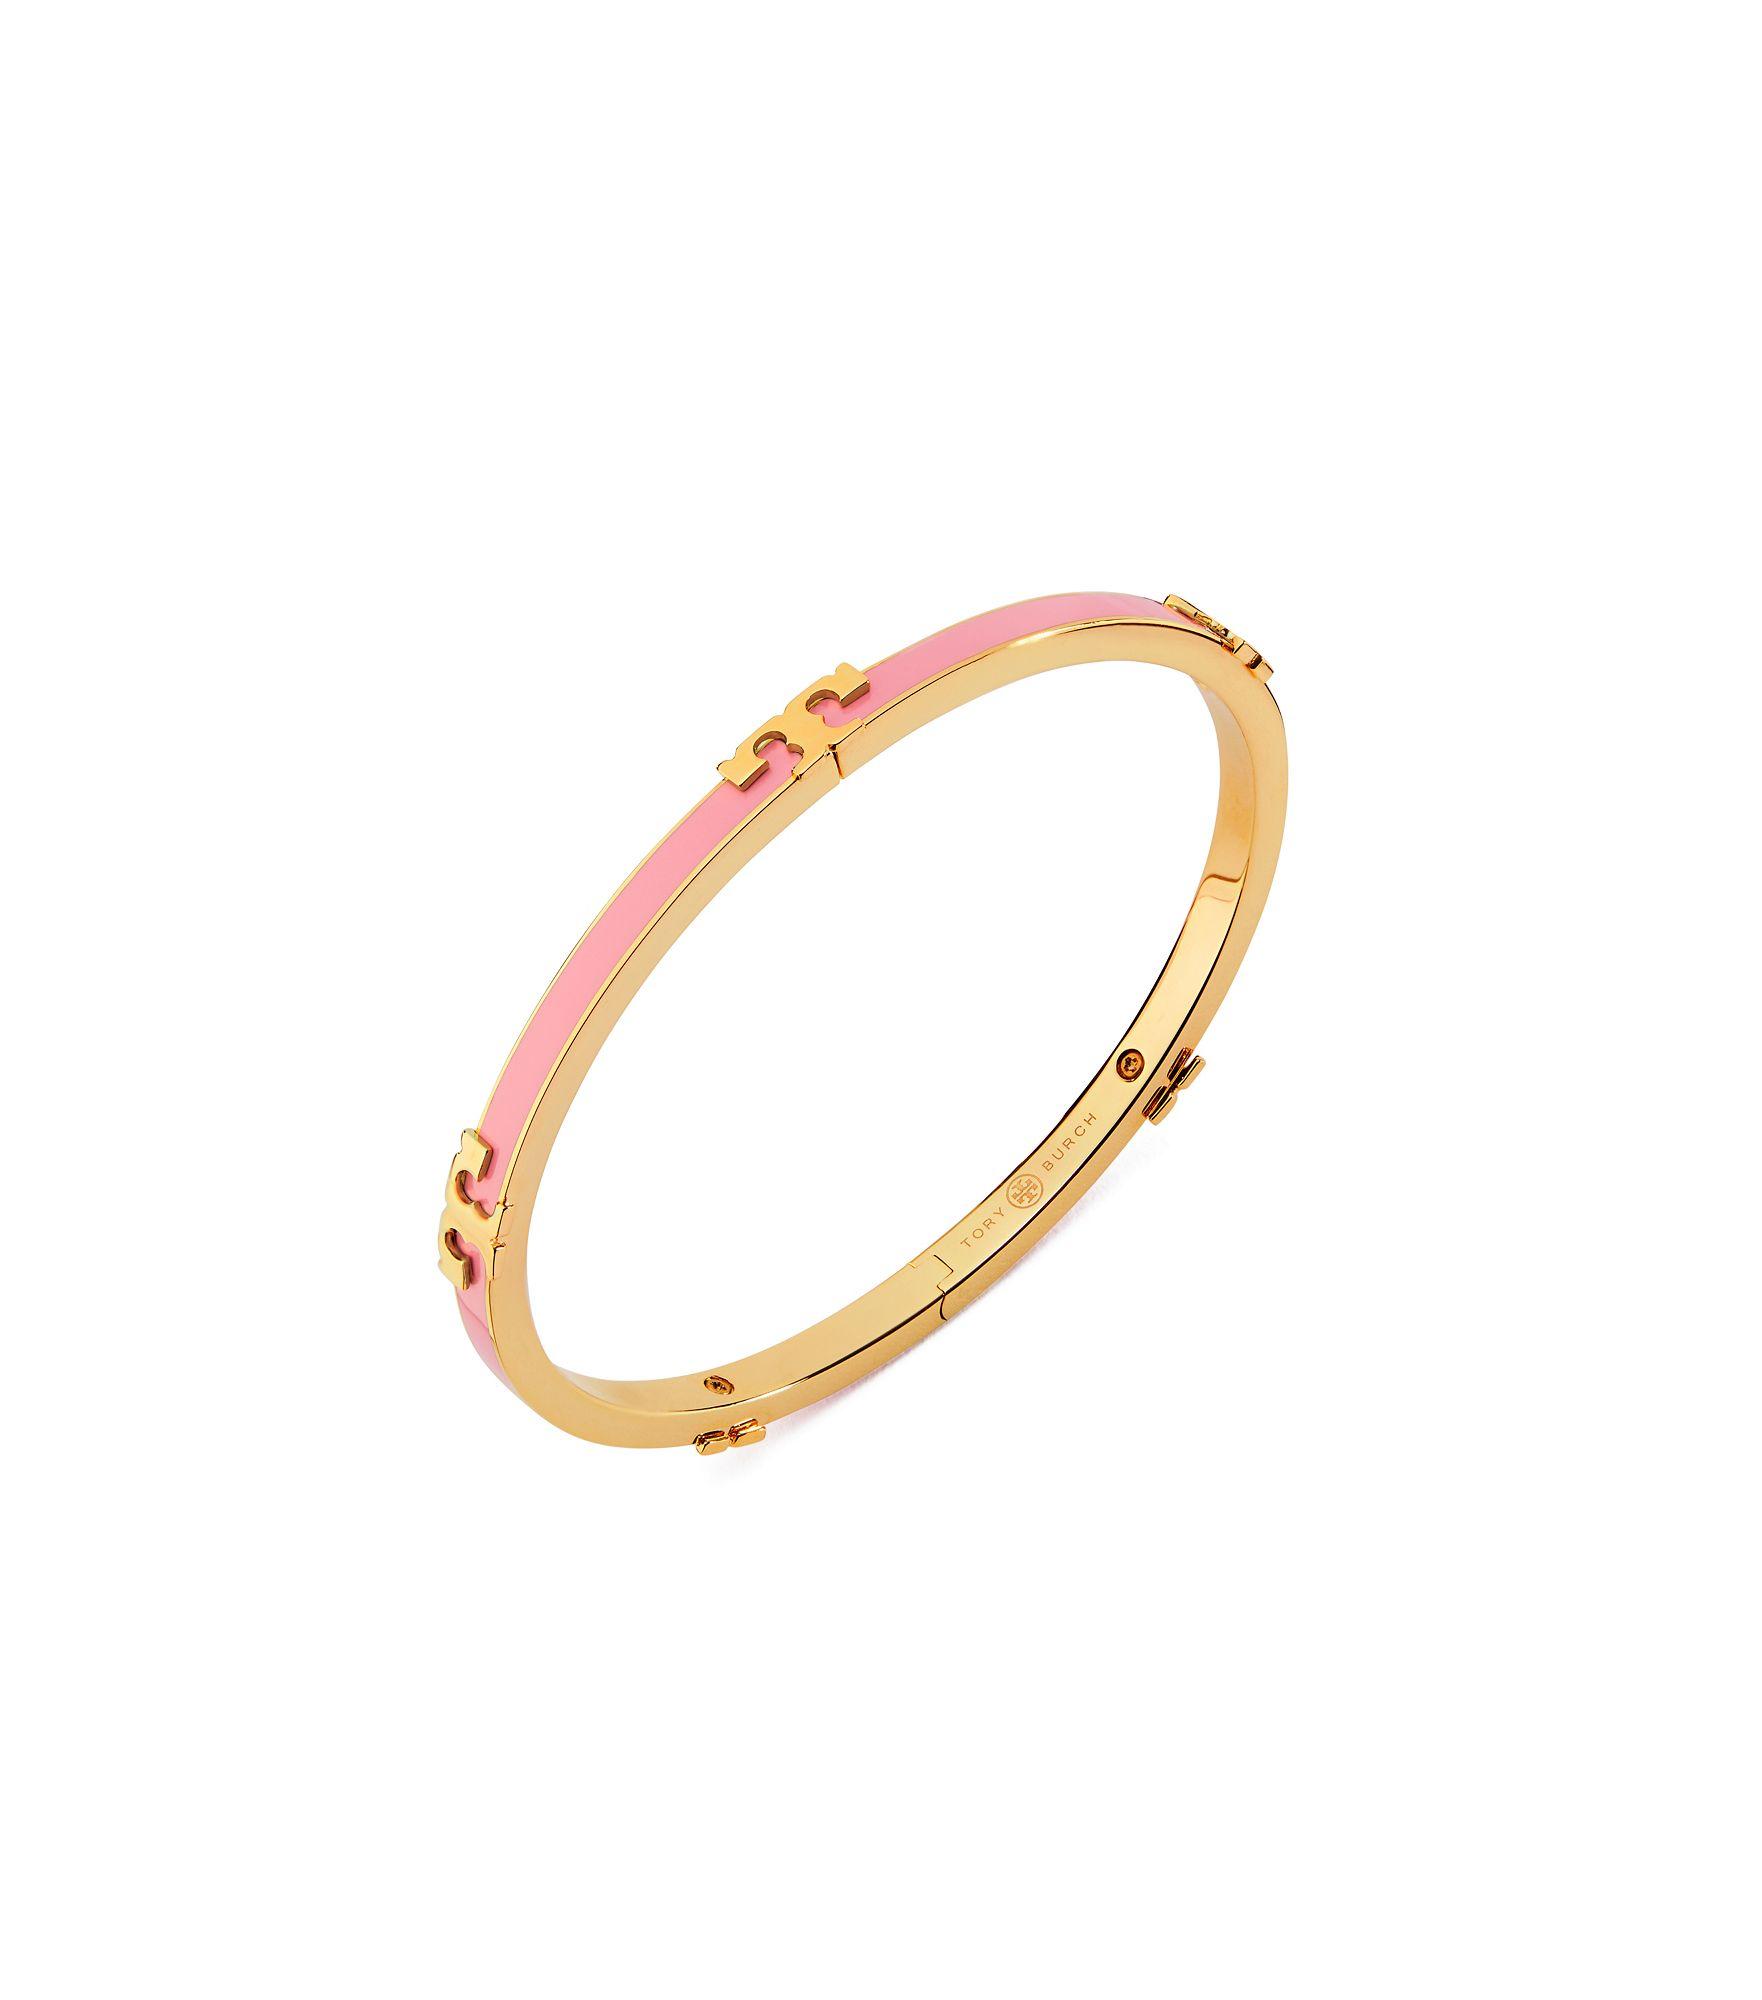 Tory Burch Serif-t Enameled Stackable Bracelet in Pink - Lyst